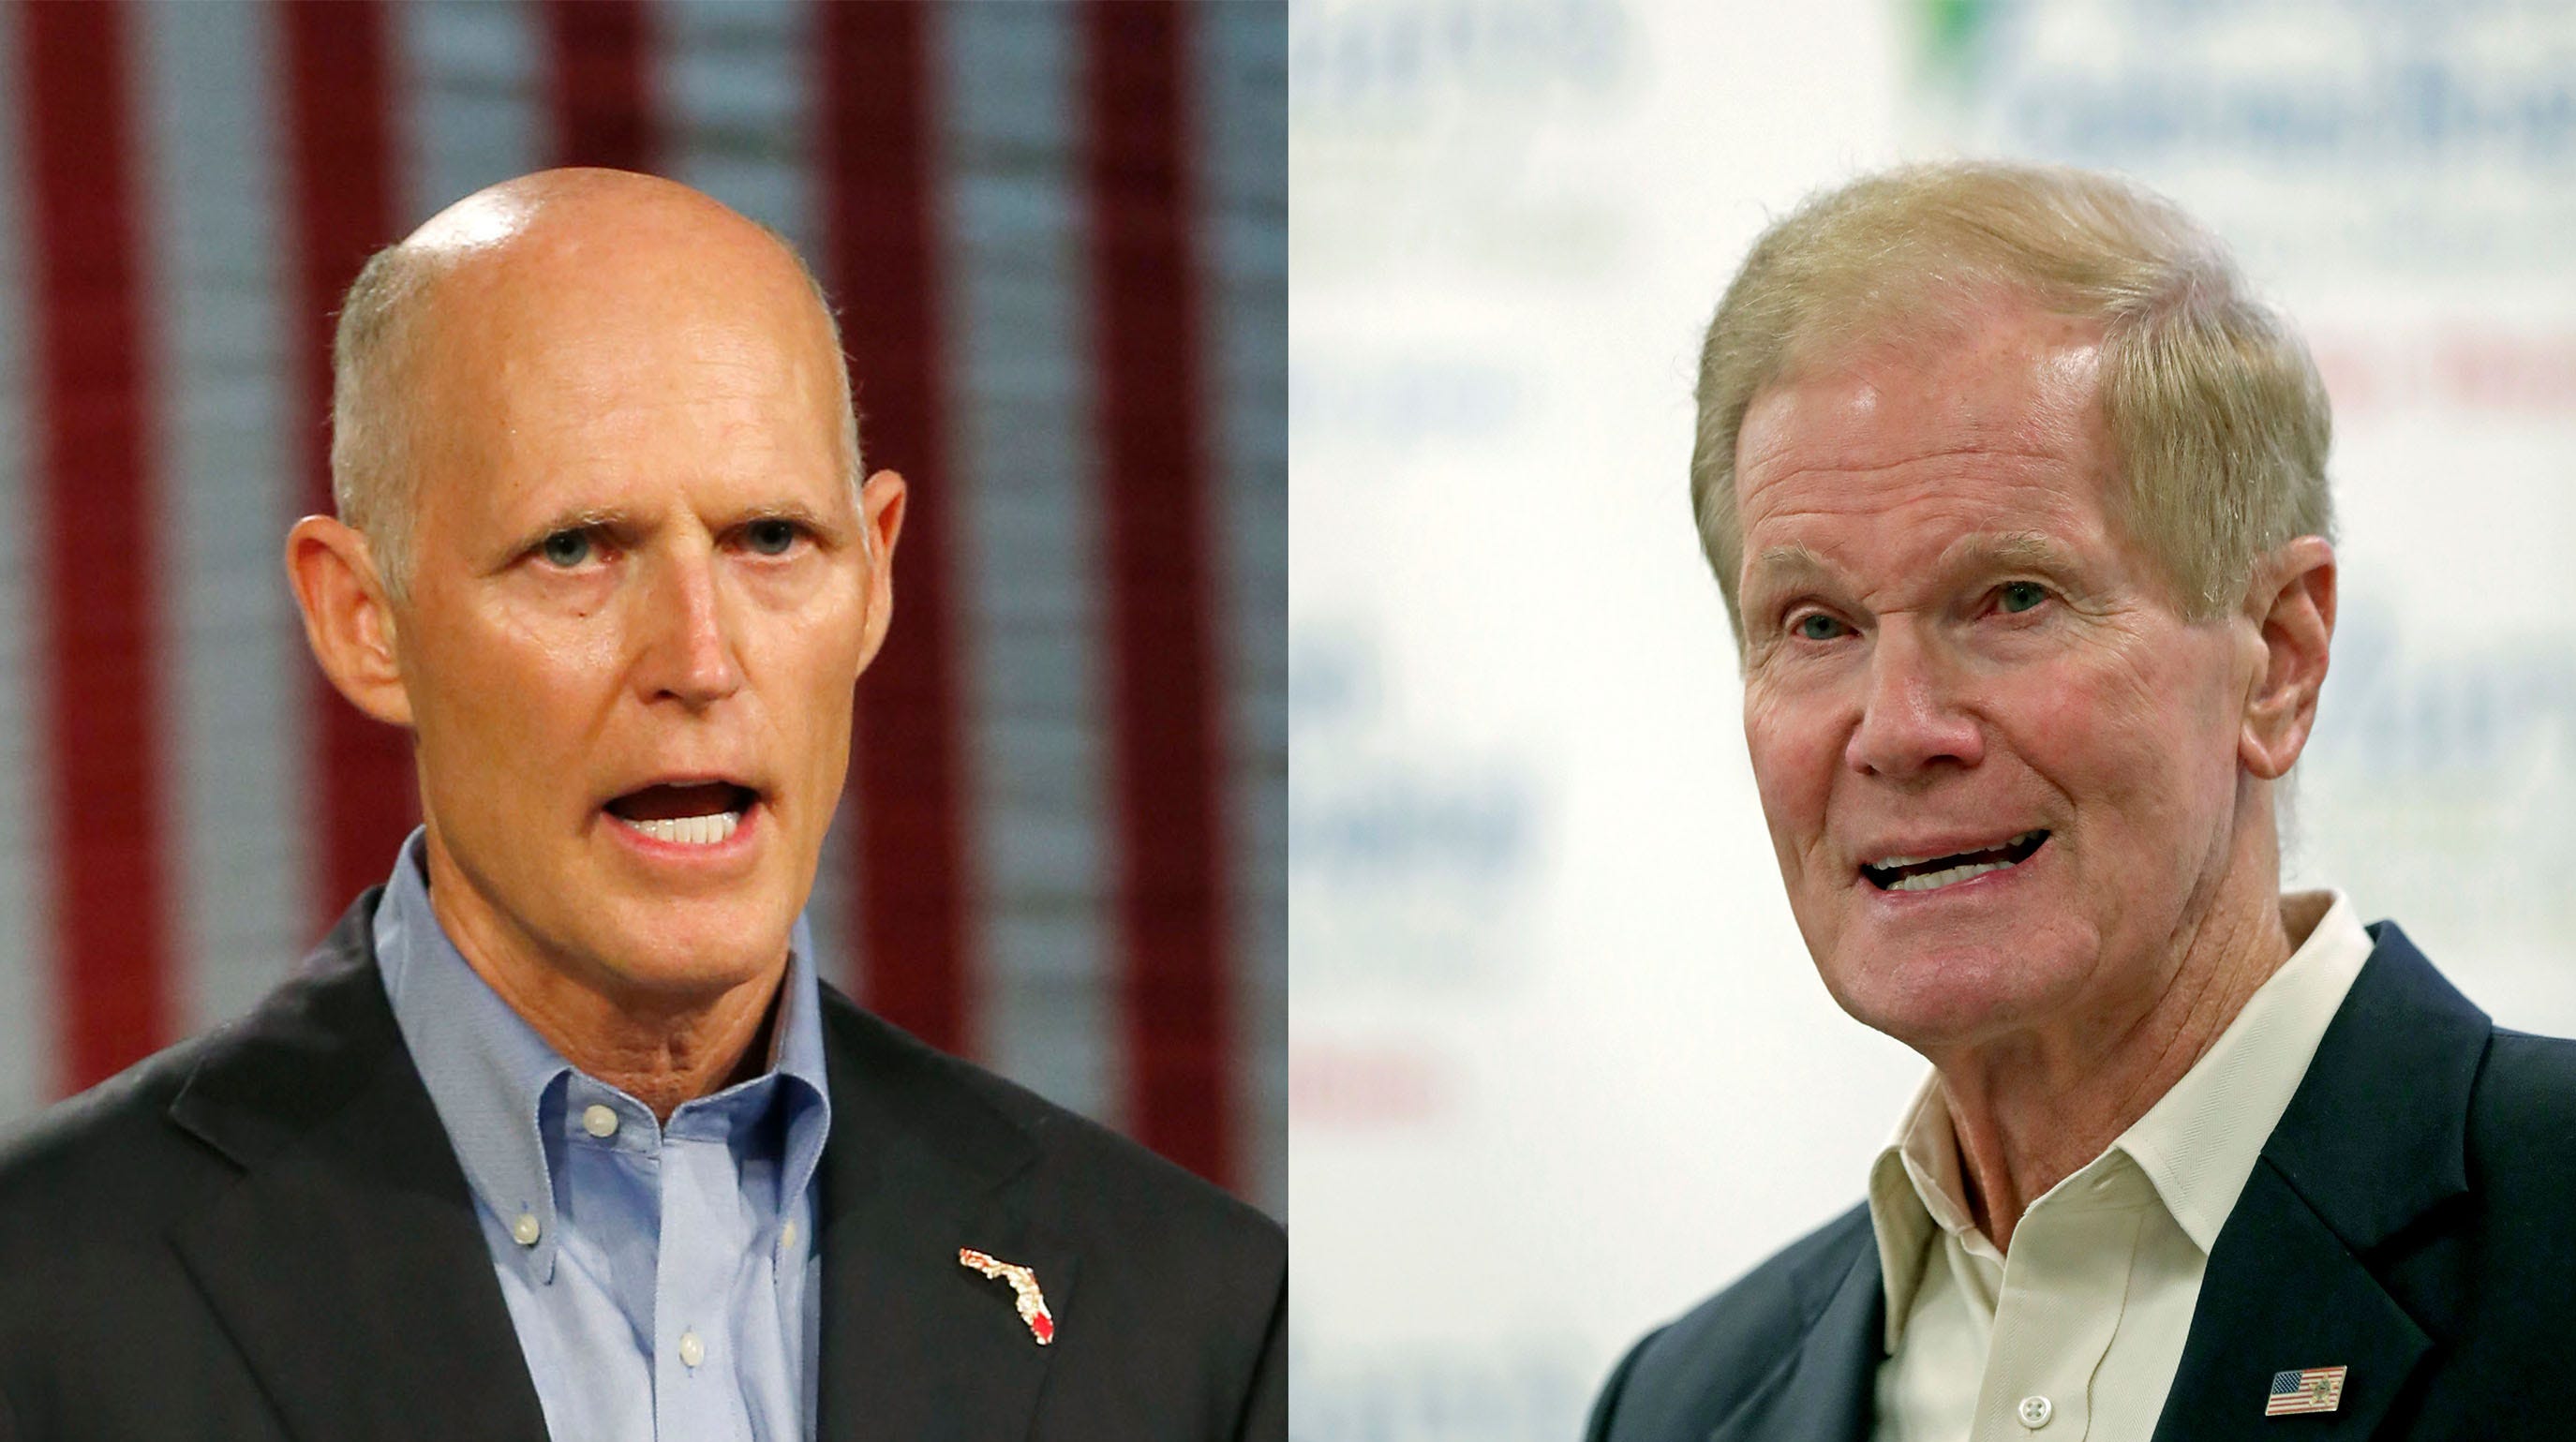 Florida Senate race between Rick Scott, Bill Nelson tied, poll finds